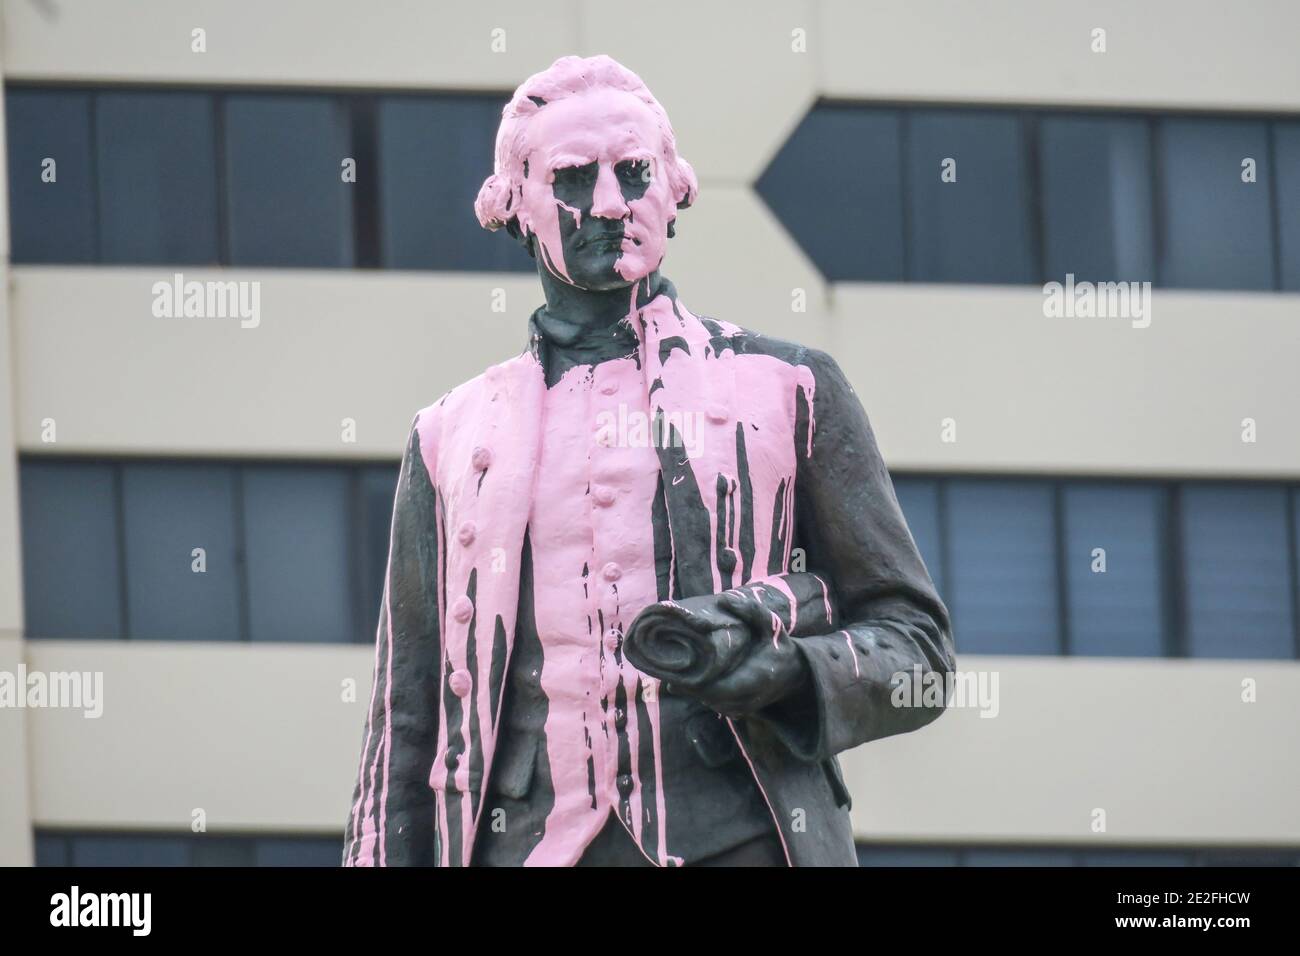 Australia Day 26 2018. Januar: Die Captain Cook Statue im Vorort St. Kilda in Melbourne ist von den Demonstranten des "Invasionstages" in rosa Farbe getuckelt. Stockfoto